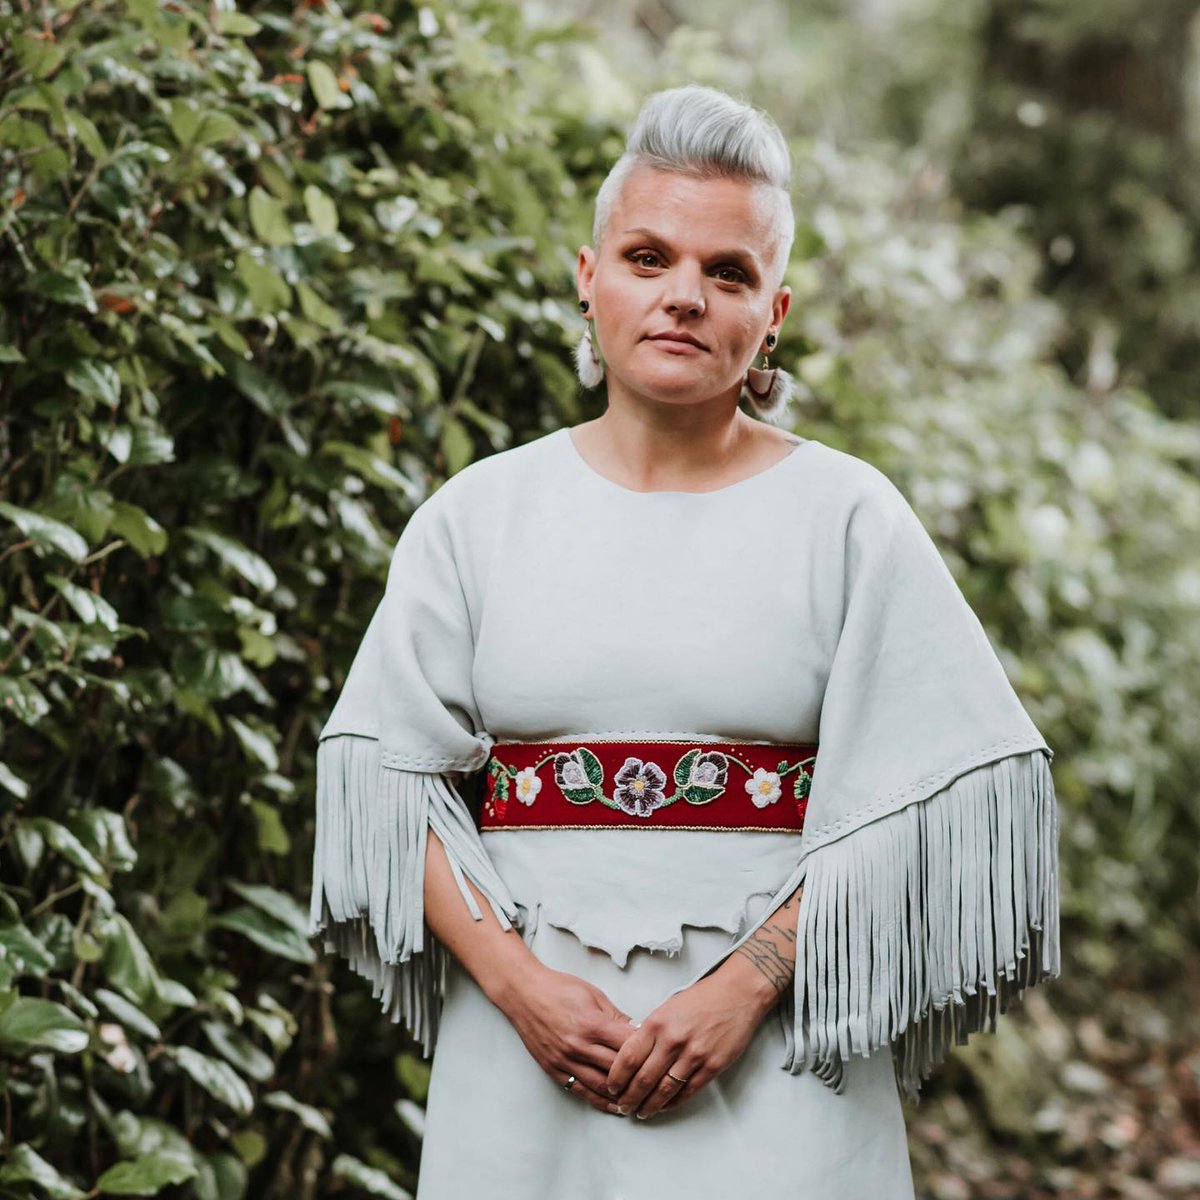 U of G Engineering Alumni, Colleen O'Toole, shares her journey to supporting Indigenous community-led development. #NationalIndigenousHistoryMonth #NationalIndigenousPeoplesDay #GuelphEngineering #EnvironmentalEngineering @UofGCEPS